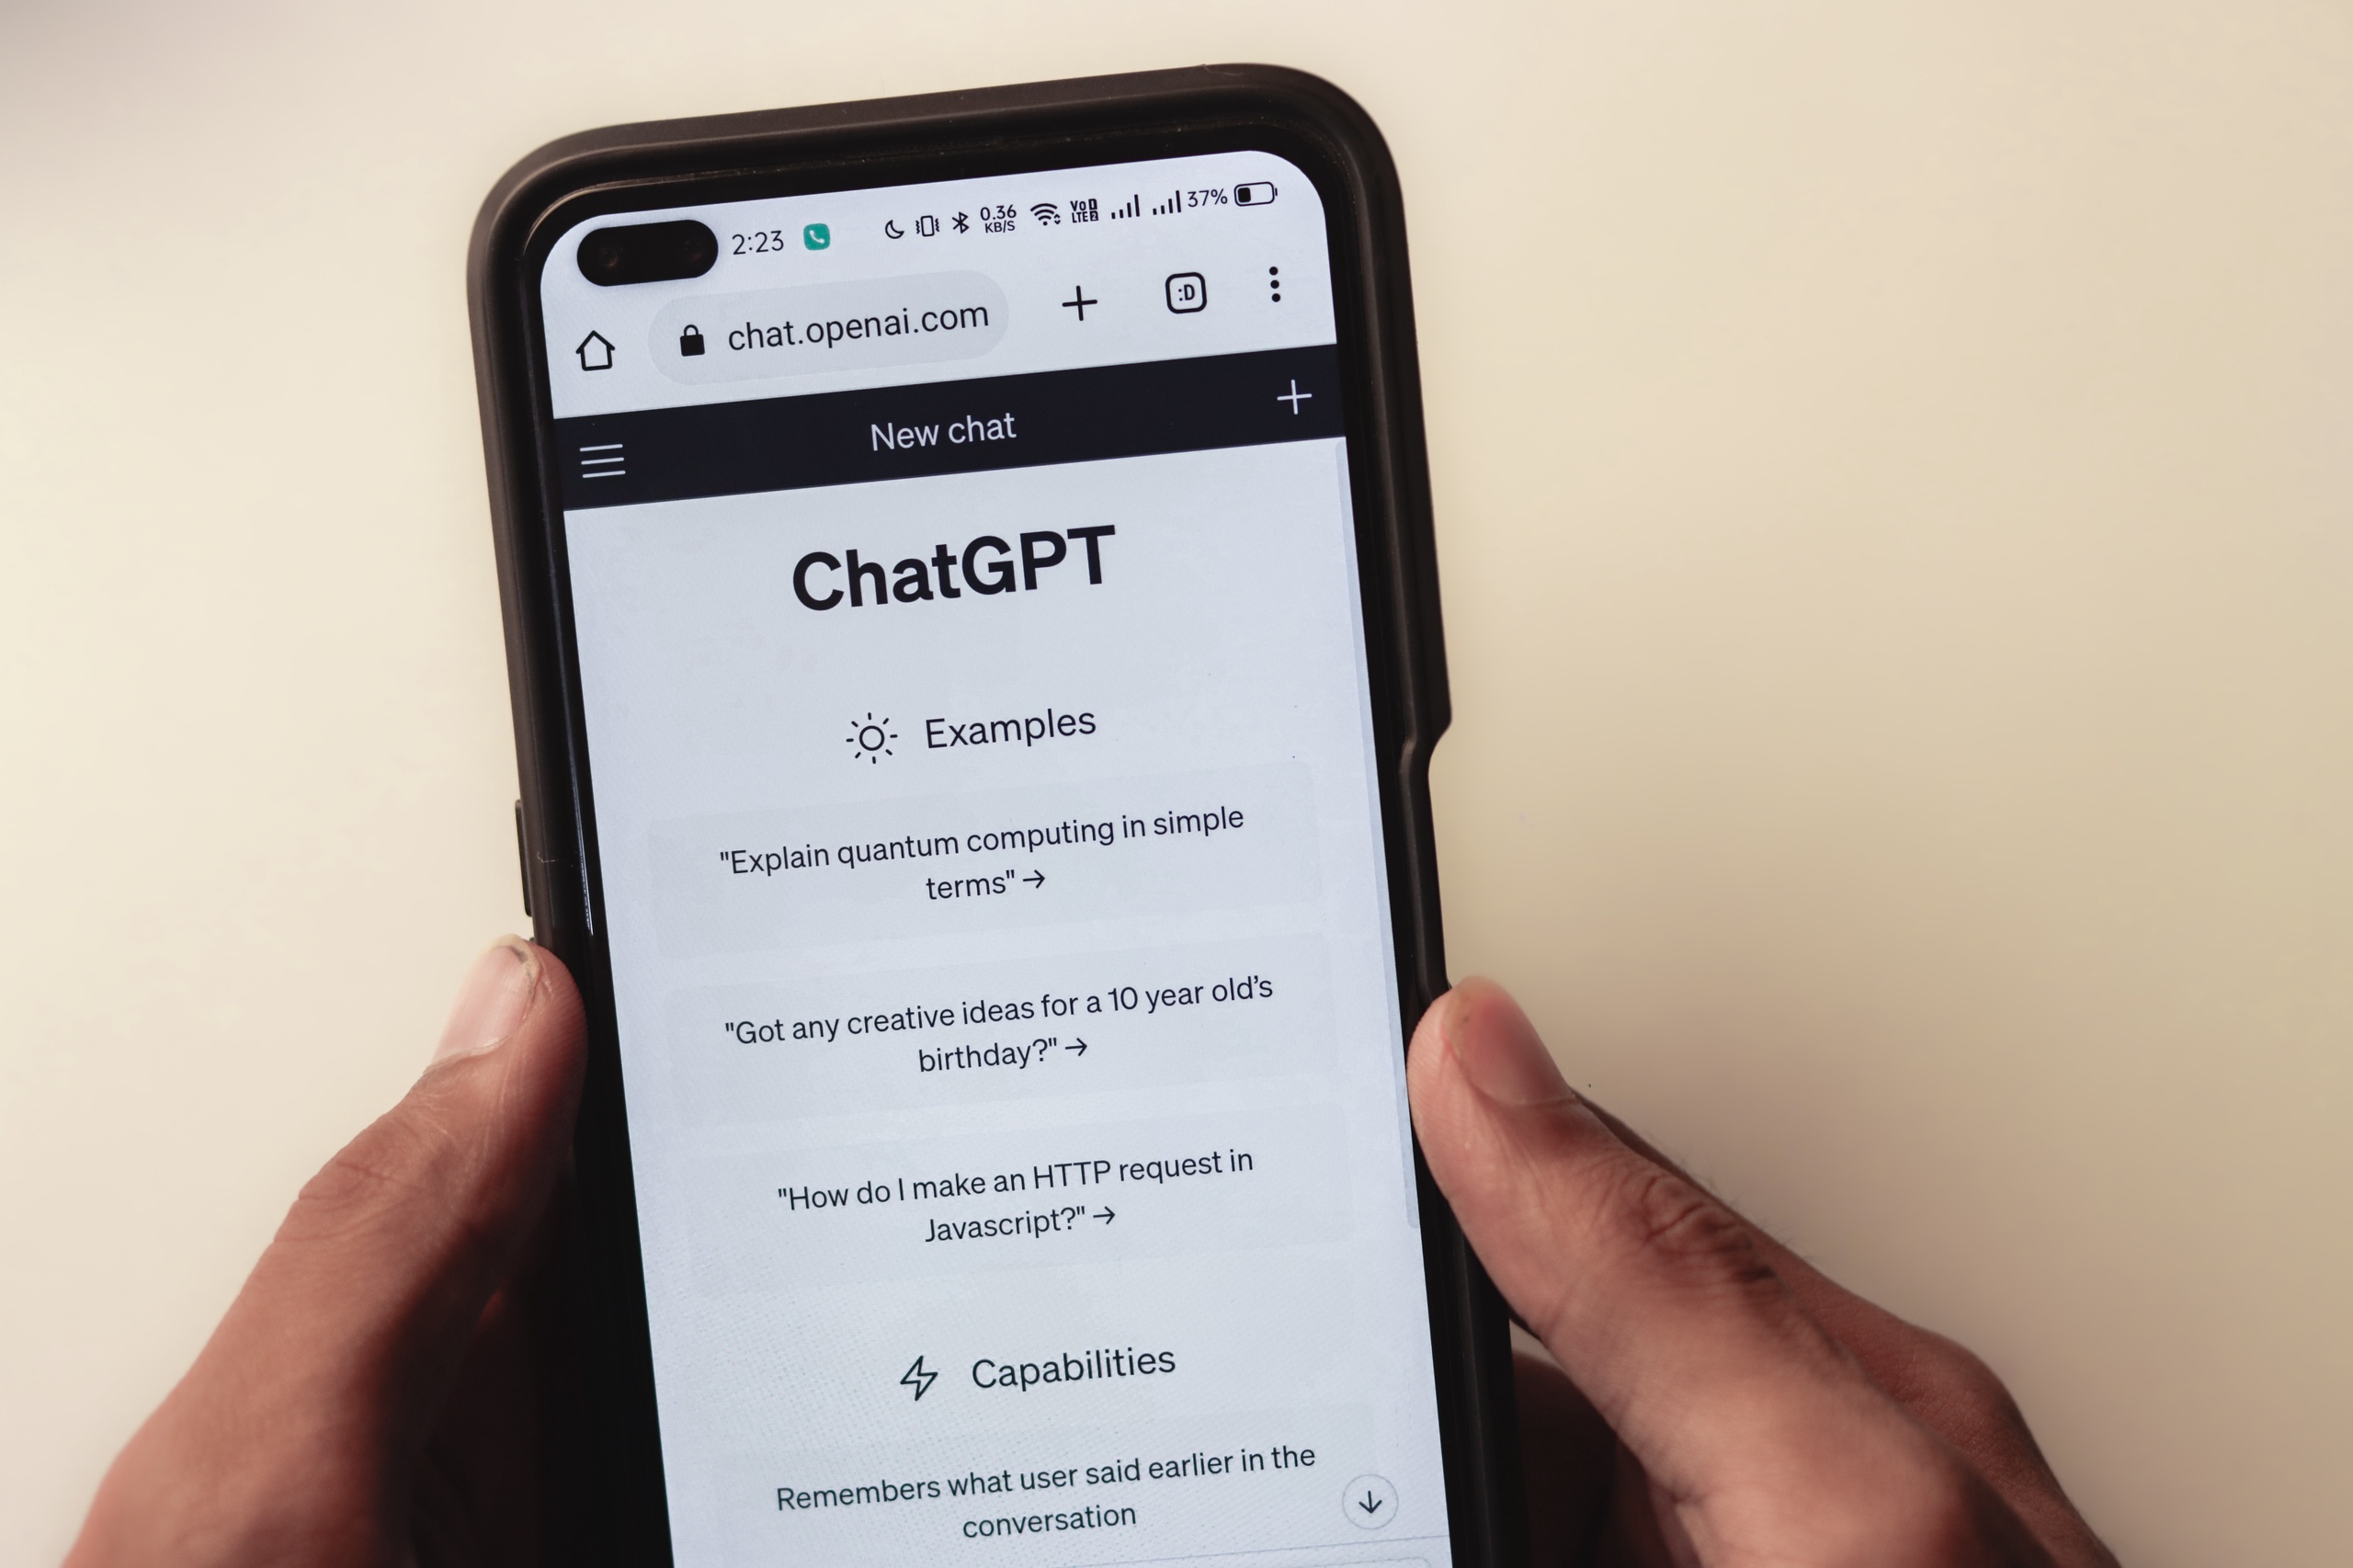  ChatGPT van OpenAI kan op verzoek van gebruikers hele teksten schrijven. 